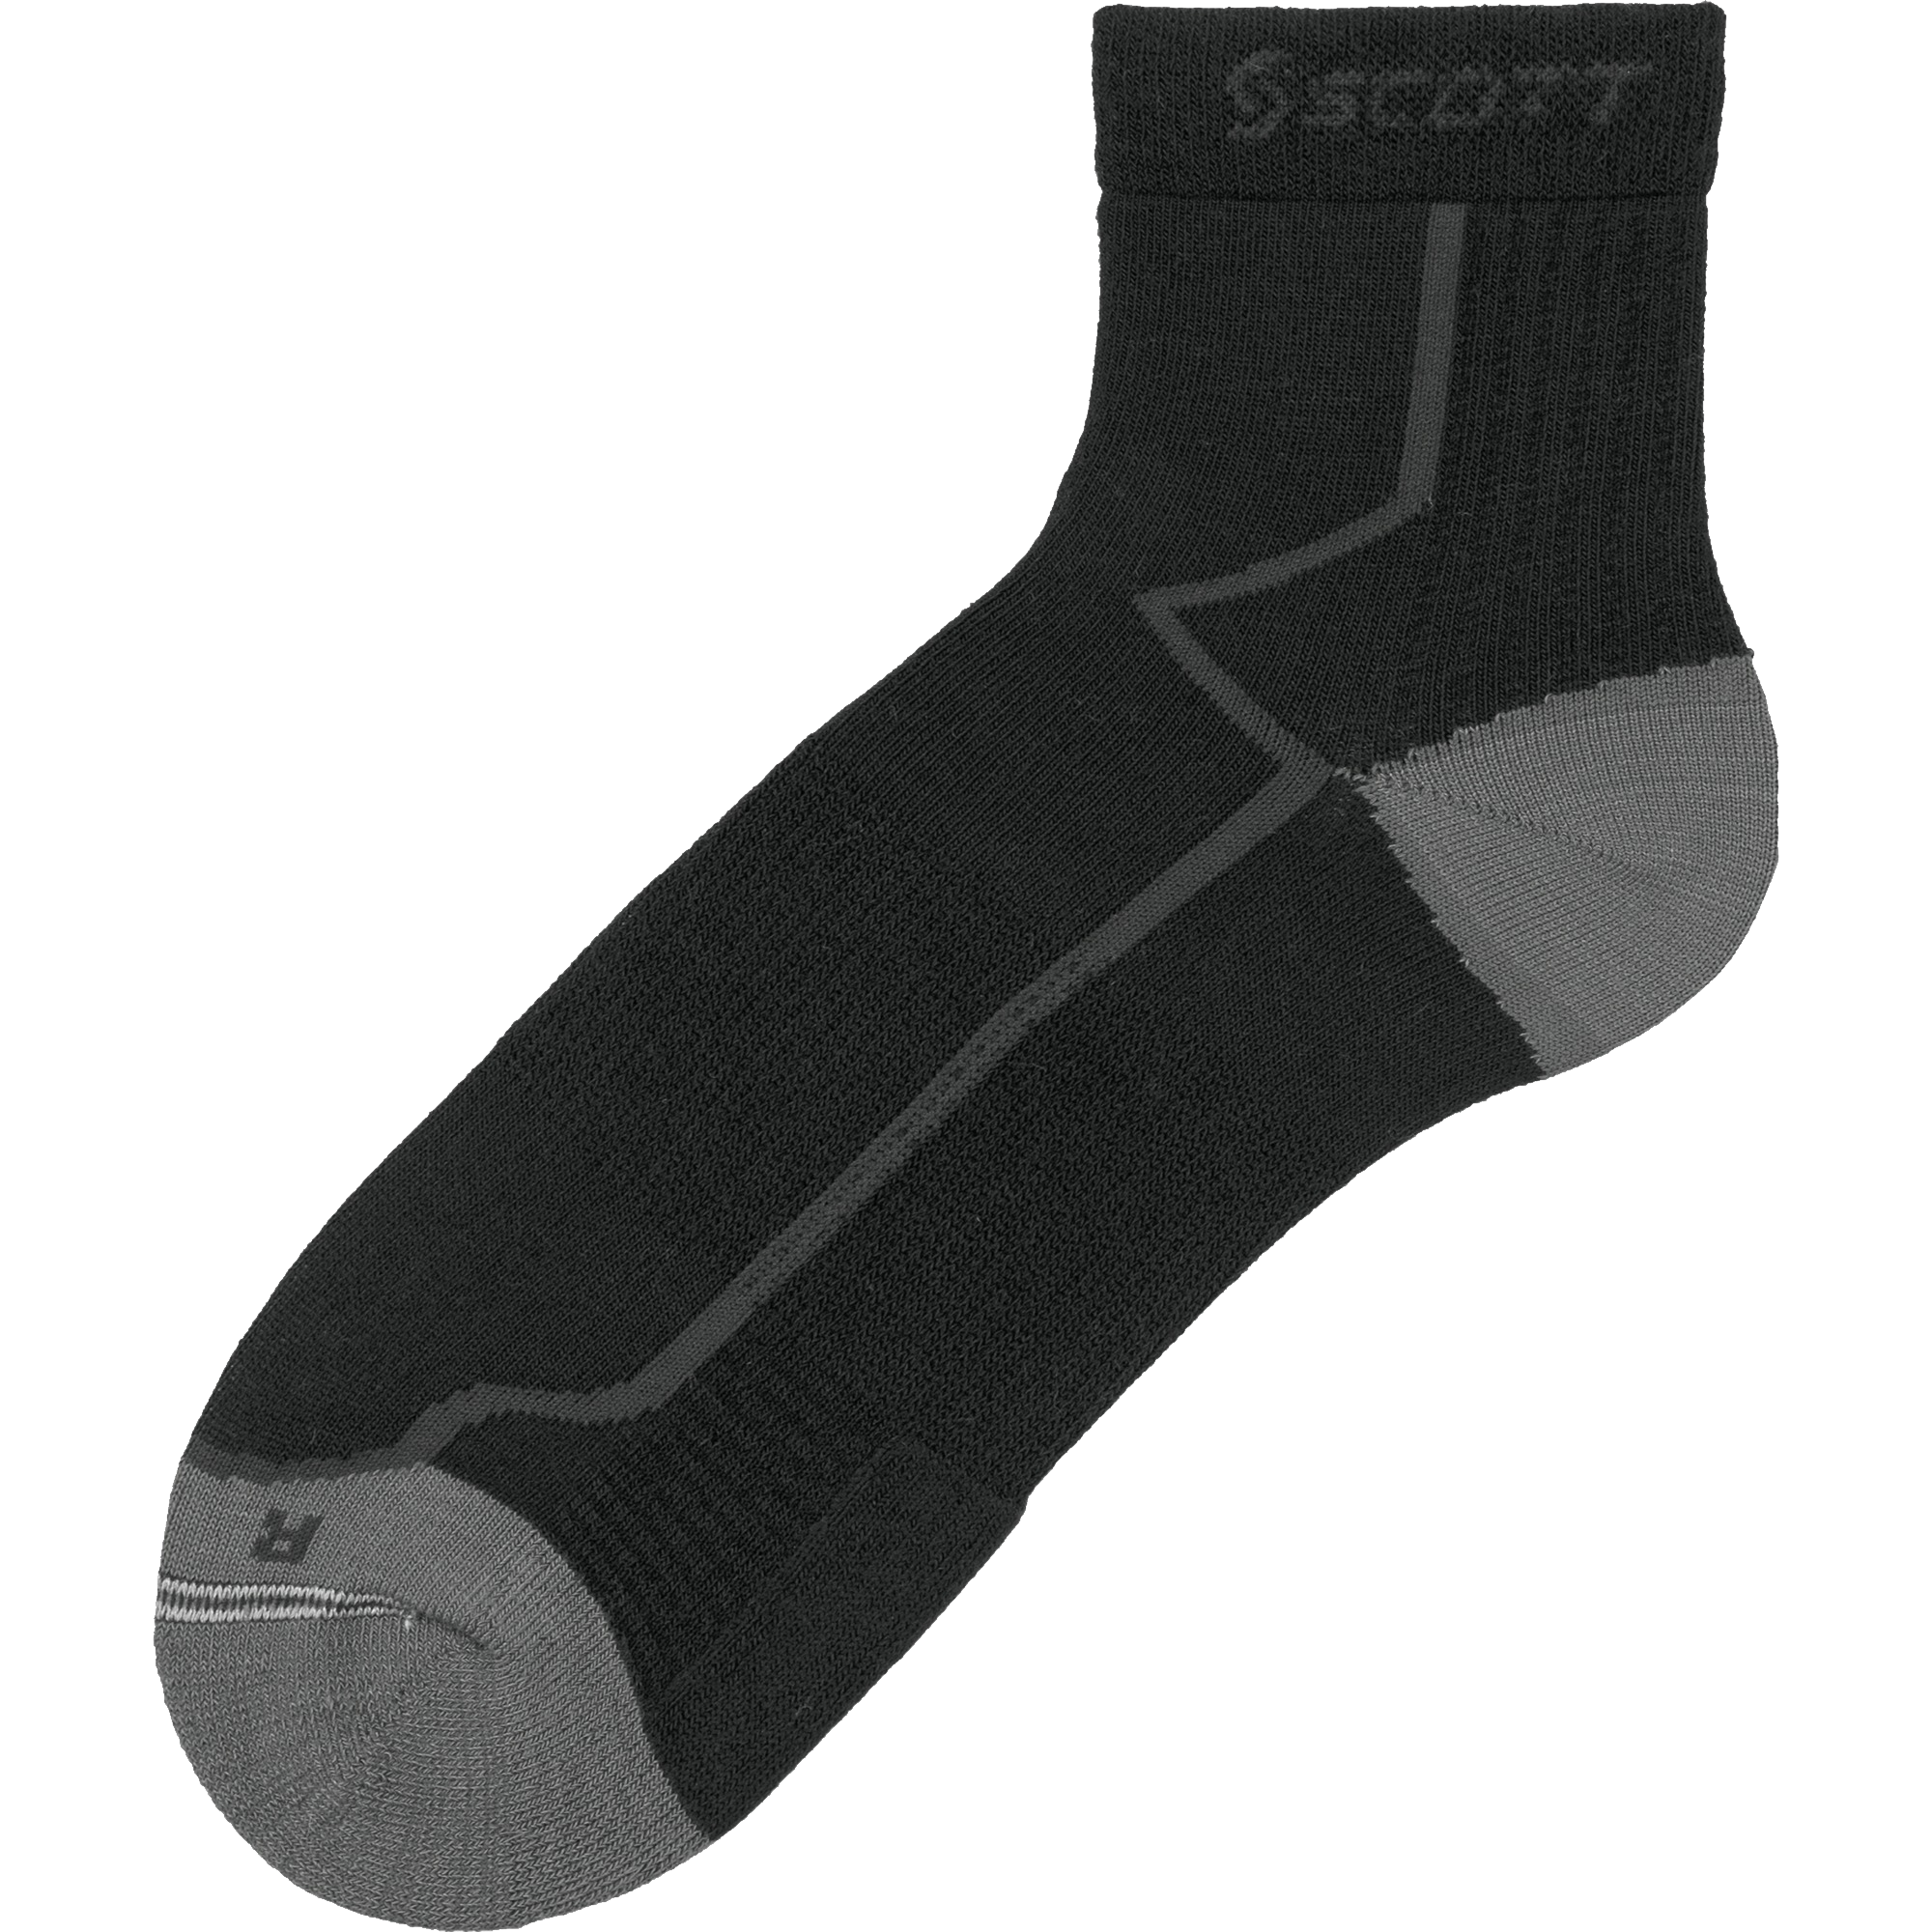 Black Socks PNG Image